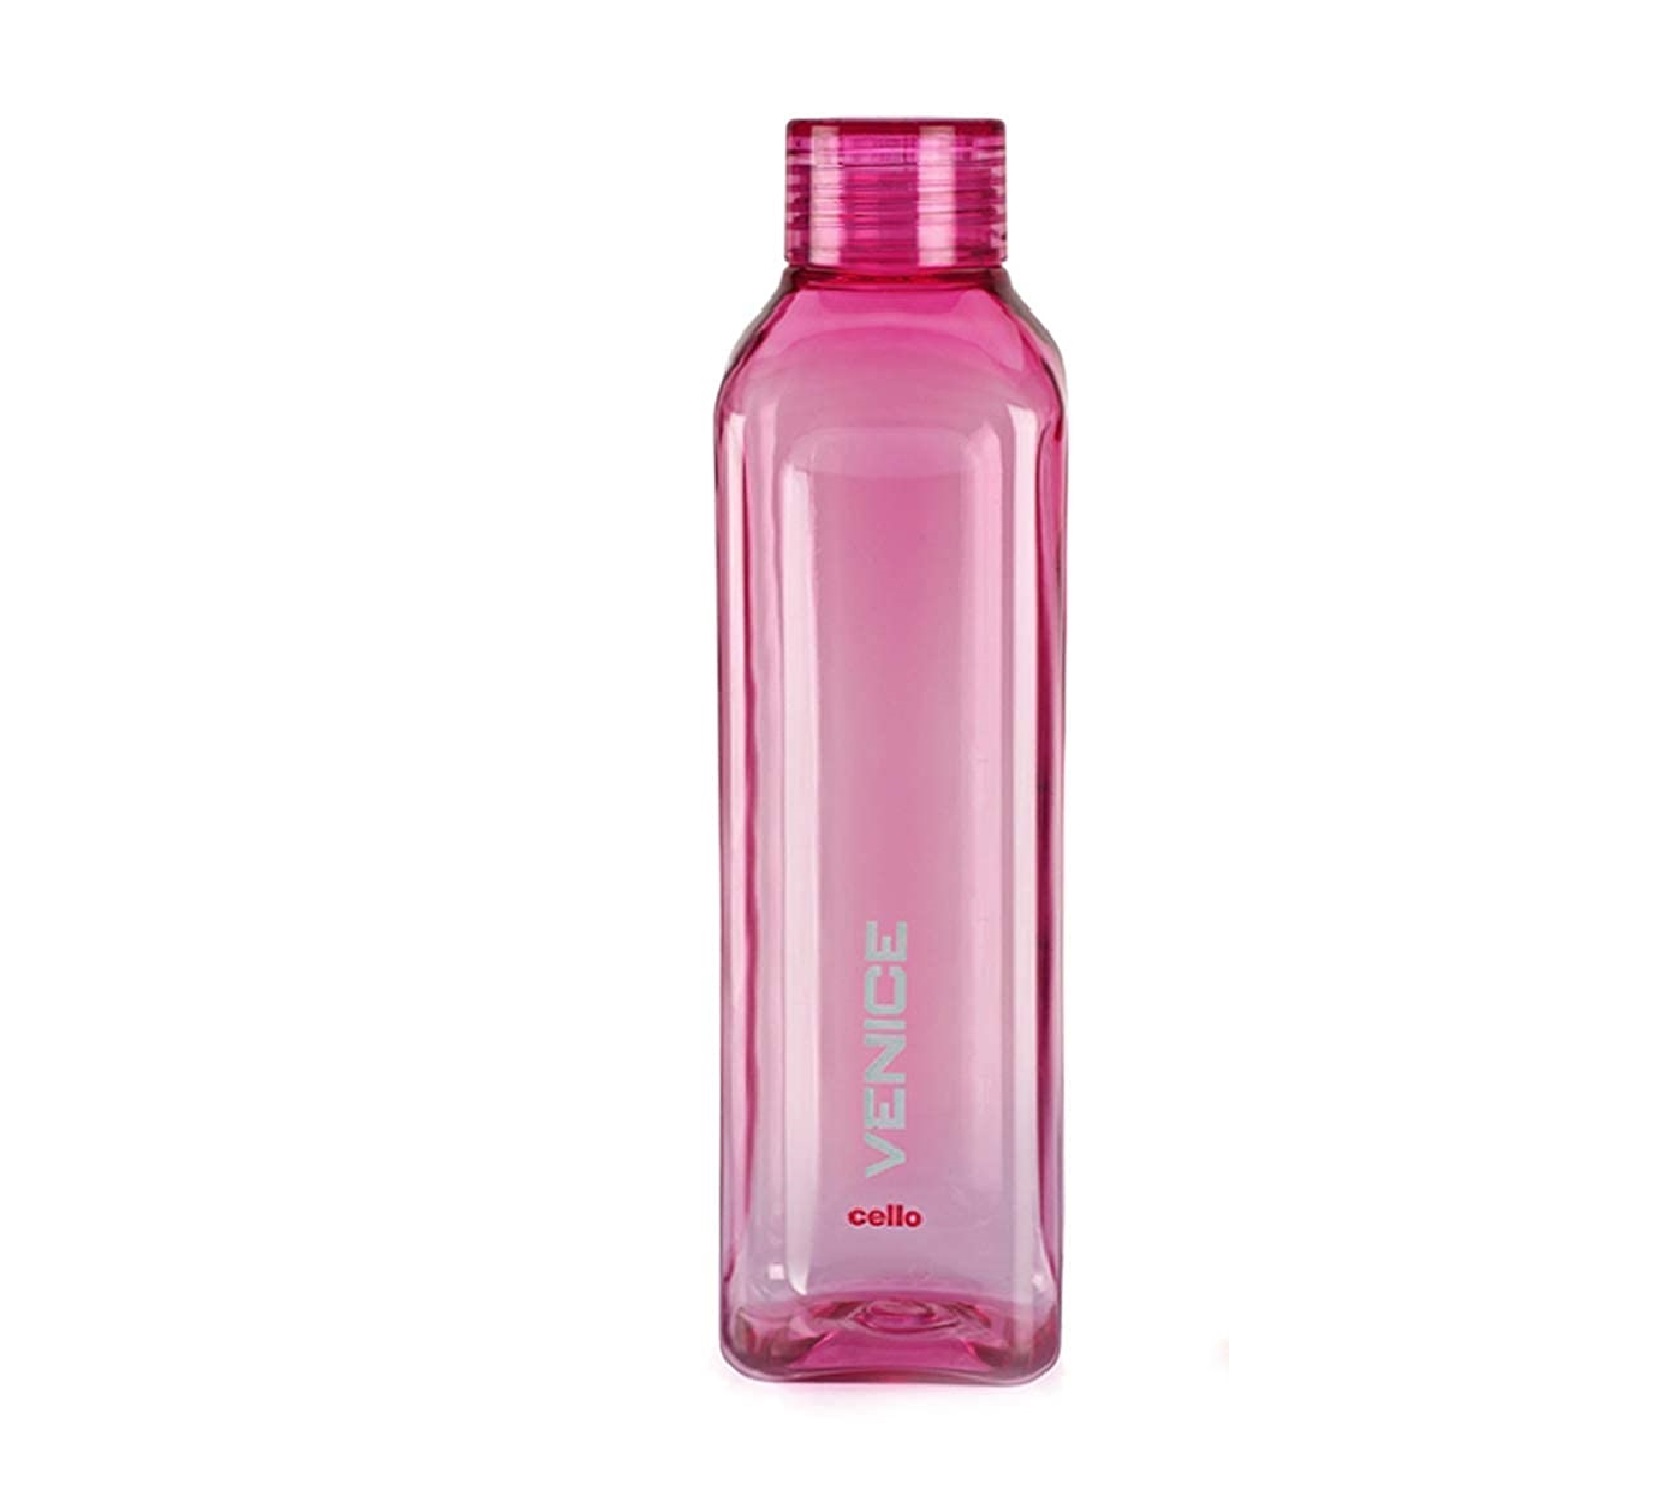 Cello Venice Plastic Water Bottle, (1L, Pink)